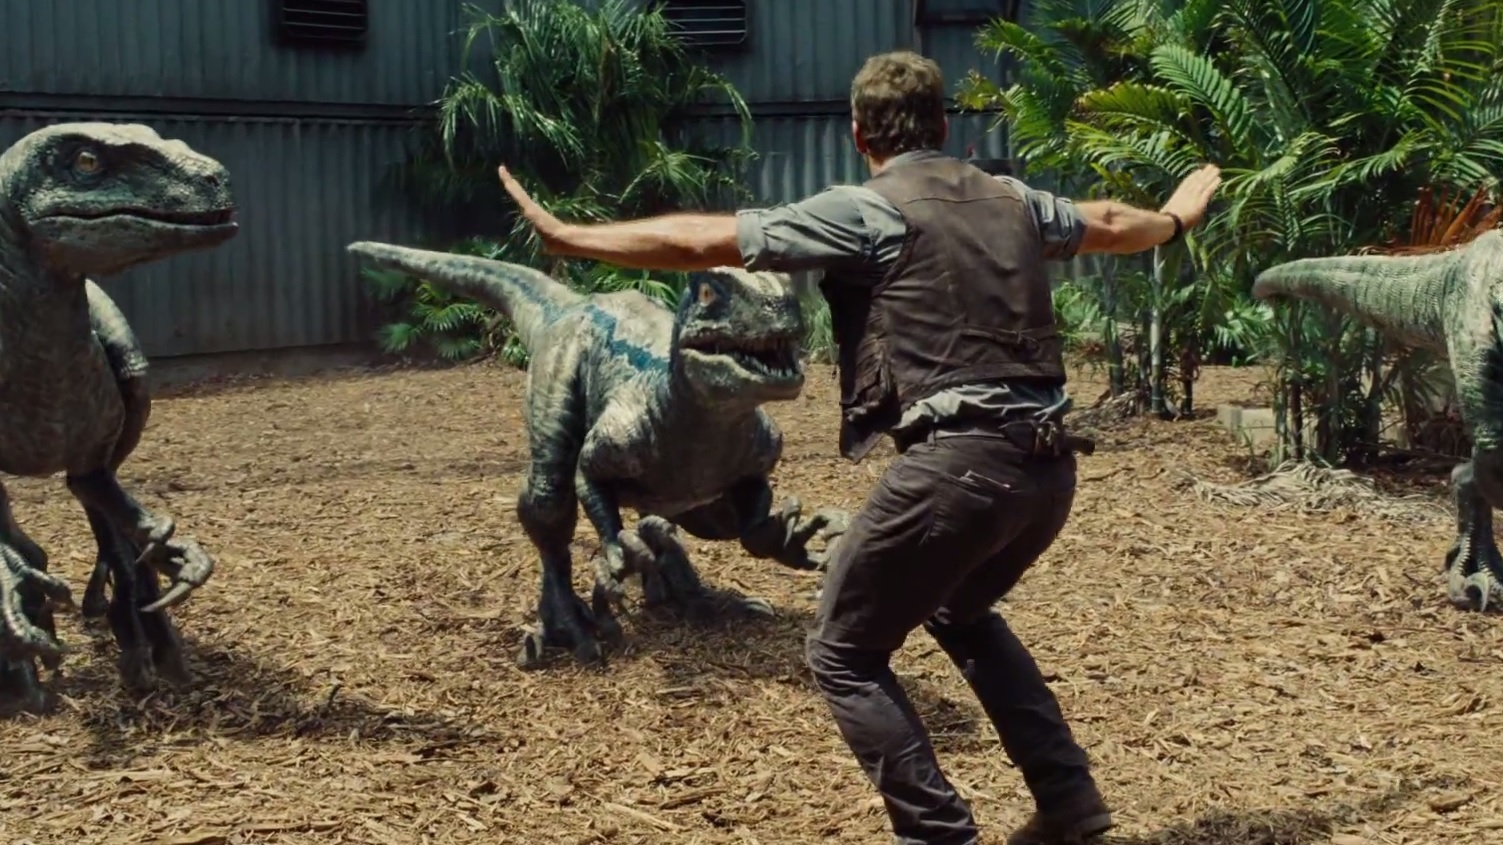 Gloednieuwe trailer 'Jurassic World'